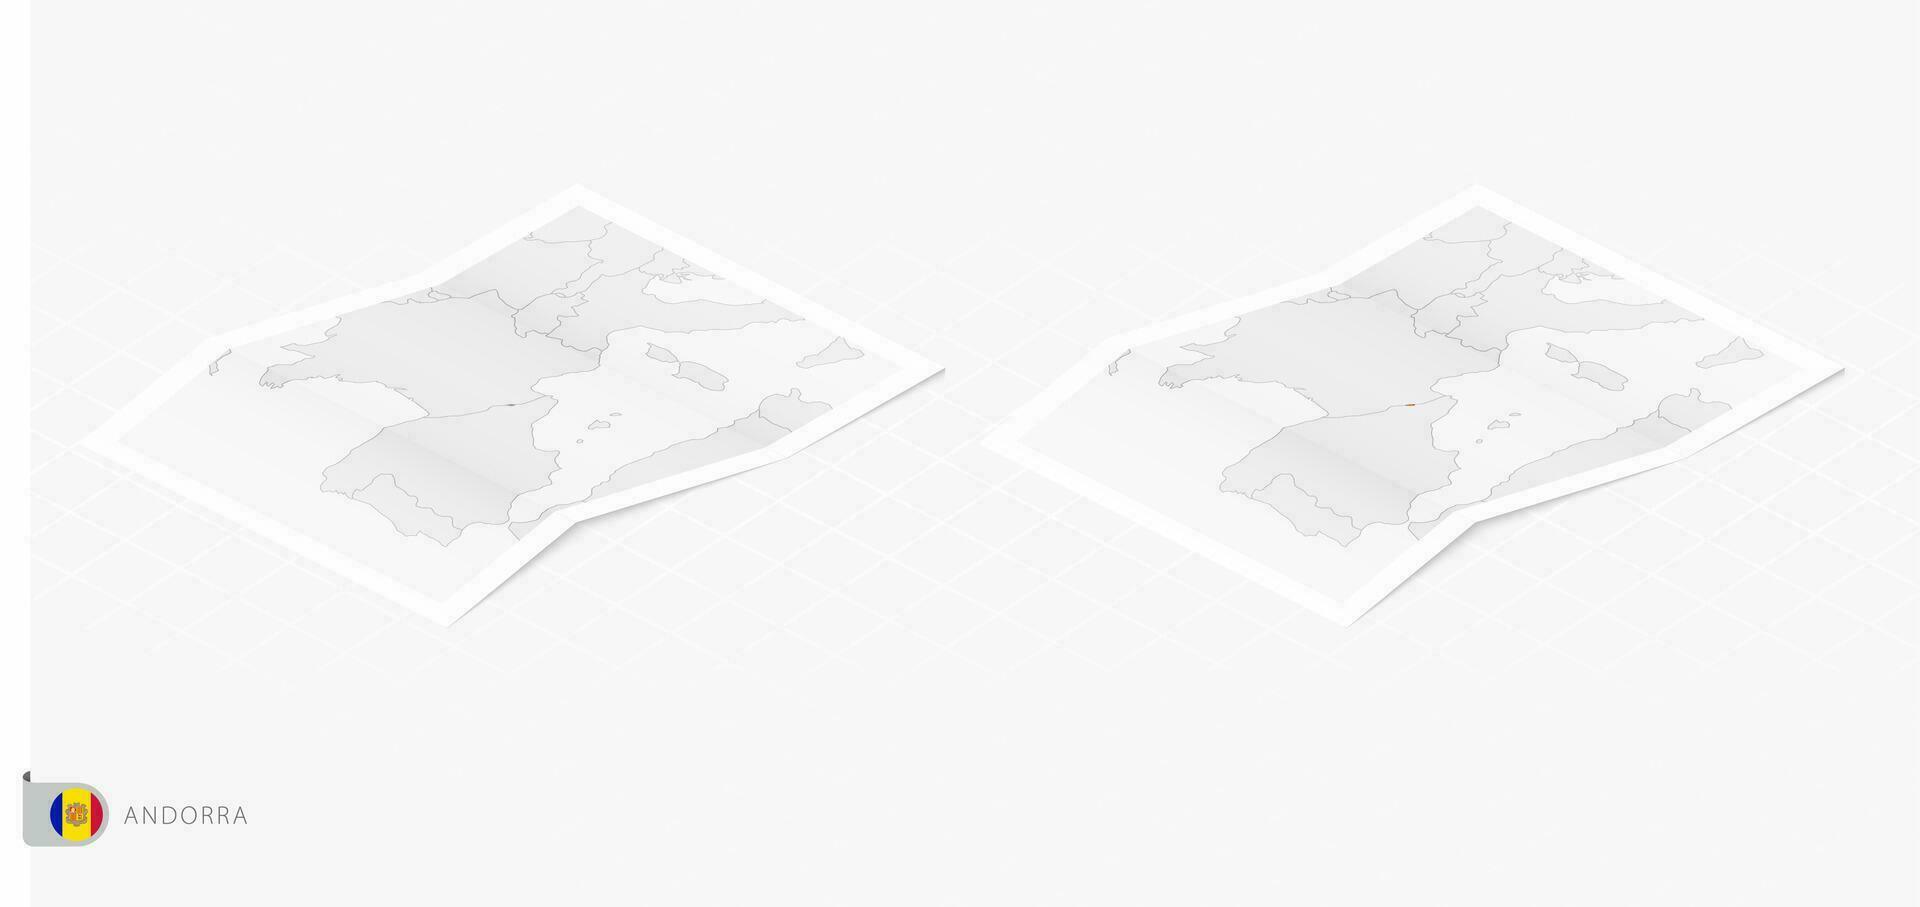 impostato di Due realistico carta geografica di andorra con ombra. il bandiera e carta geografica di andorra nel isometrico stile. vettore